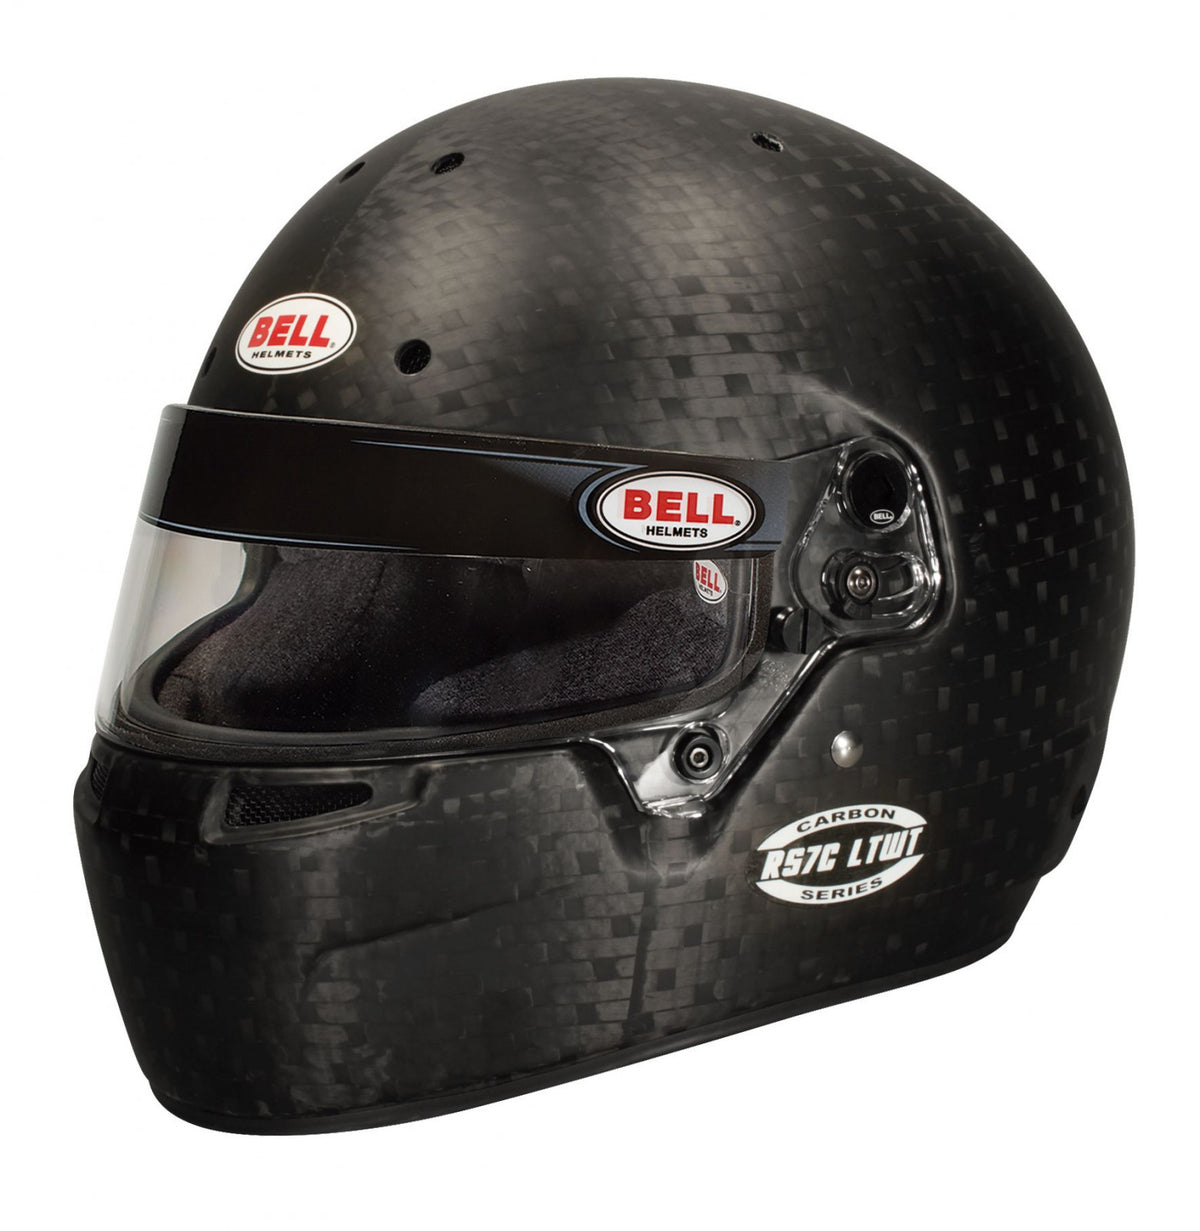 Bell Racing RS7C LTWT Helmet 7 (56 cm)